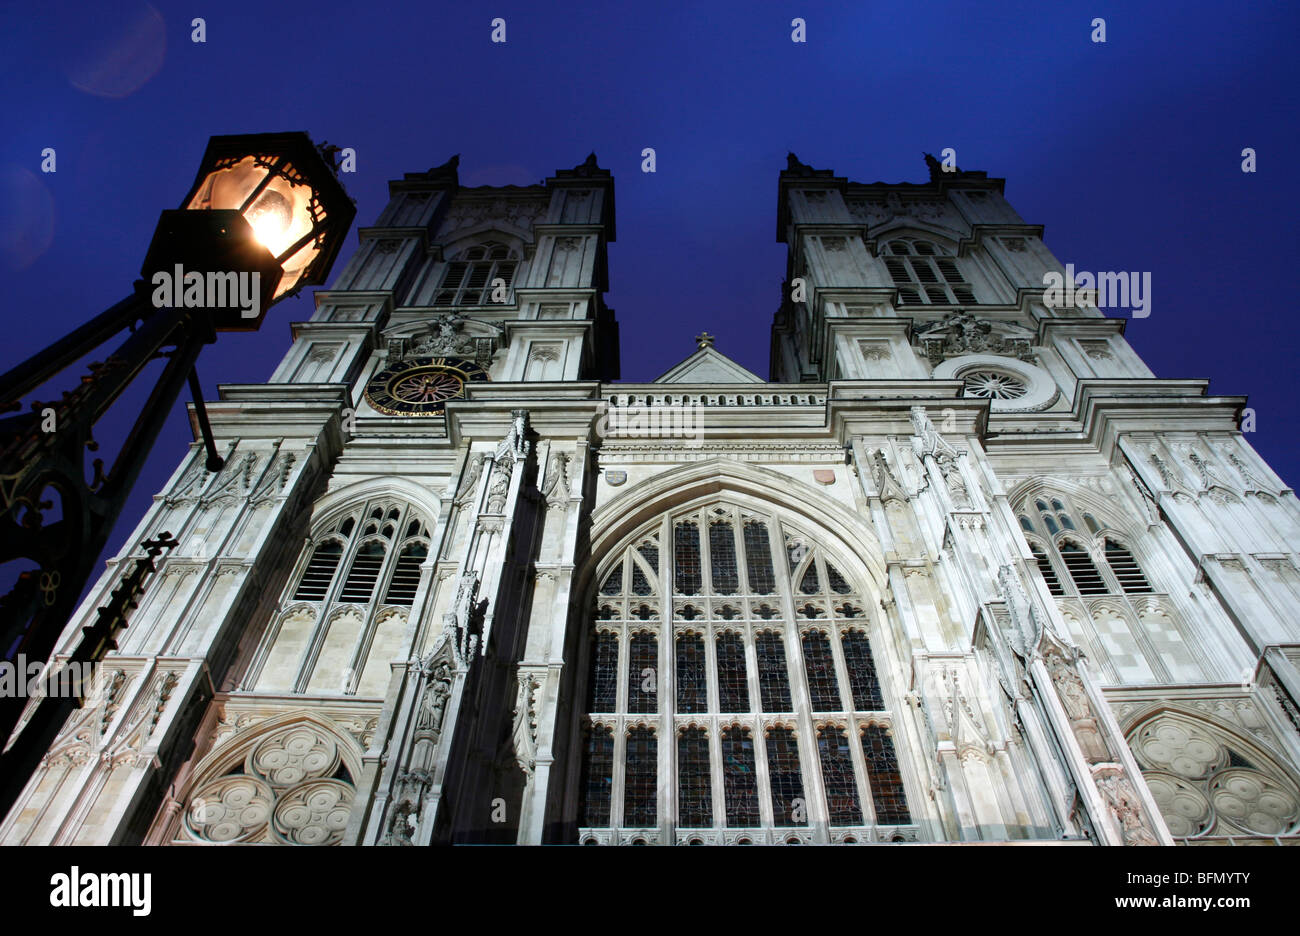 L'Angleterre, Londres. L'Abbaye de Westminster de Londres au crépuscule Banque D'Images